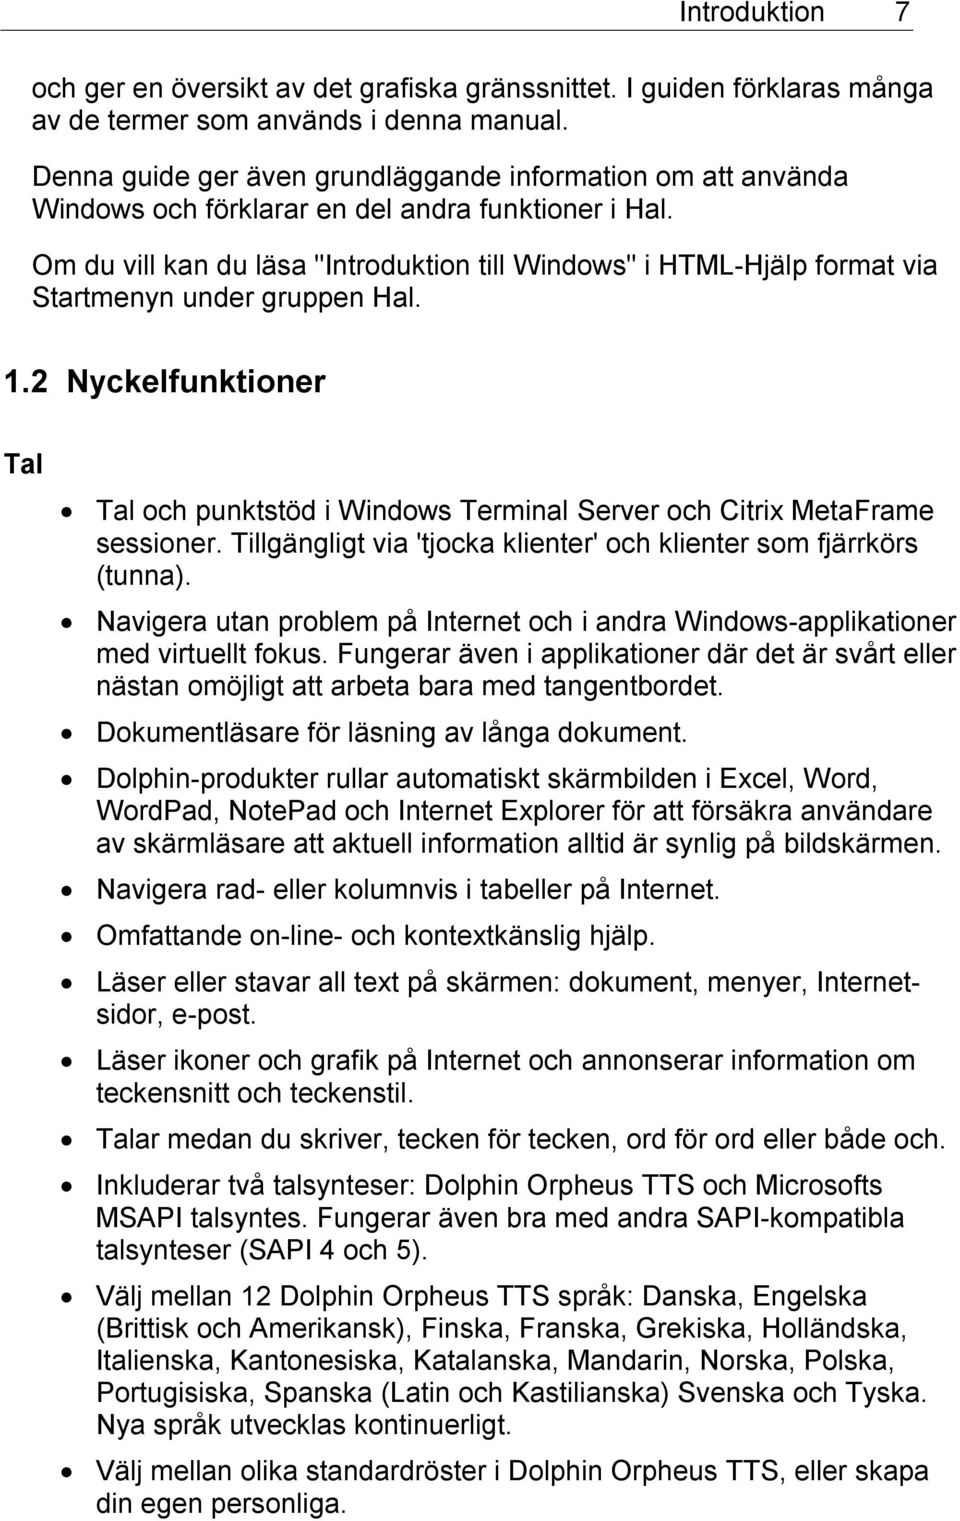 Om du vill kan du läsa "Introduktion till Windows" i HTML-Hjälp format via Startmenyn under gruppen Hal. 1.